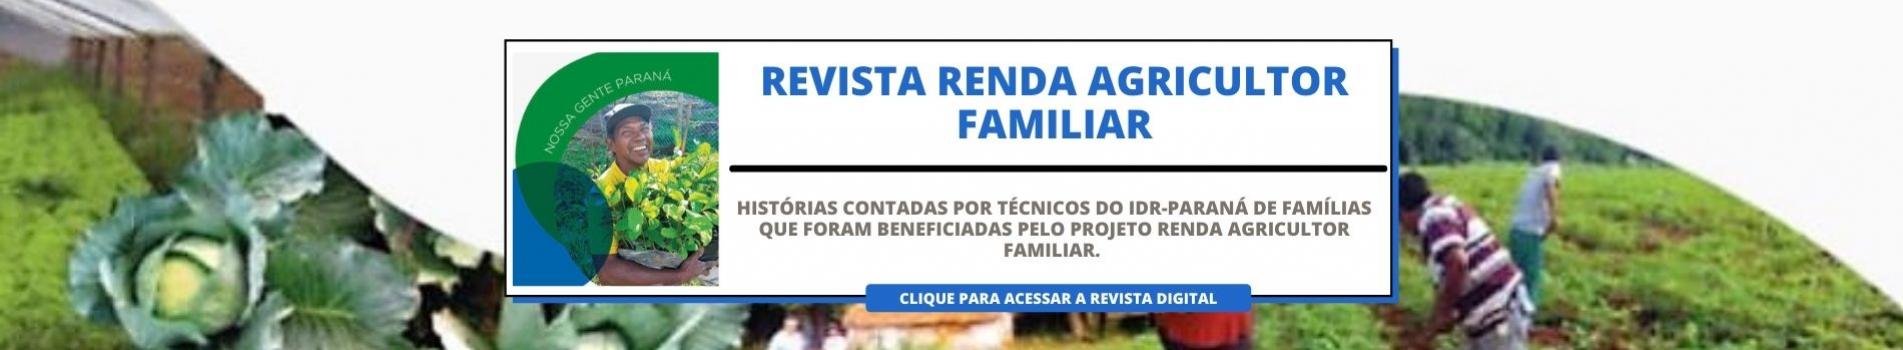 Revista Renda Agricultor Familiar